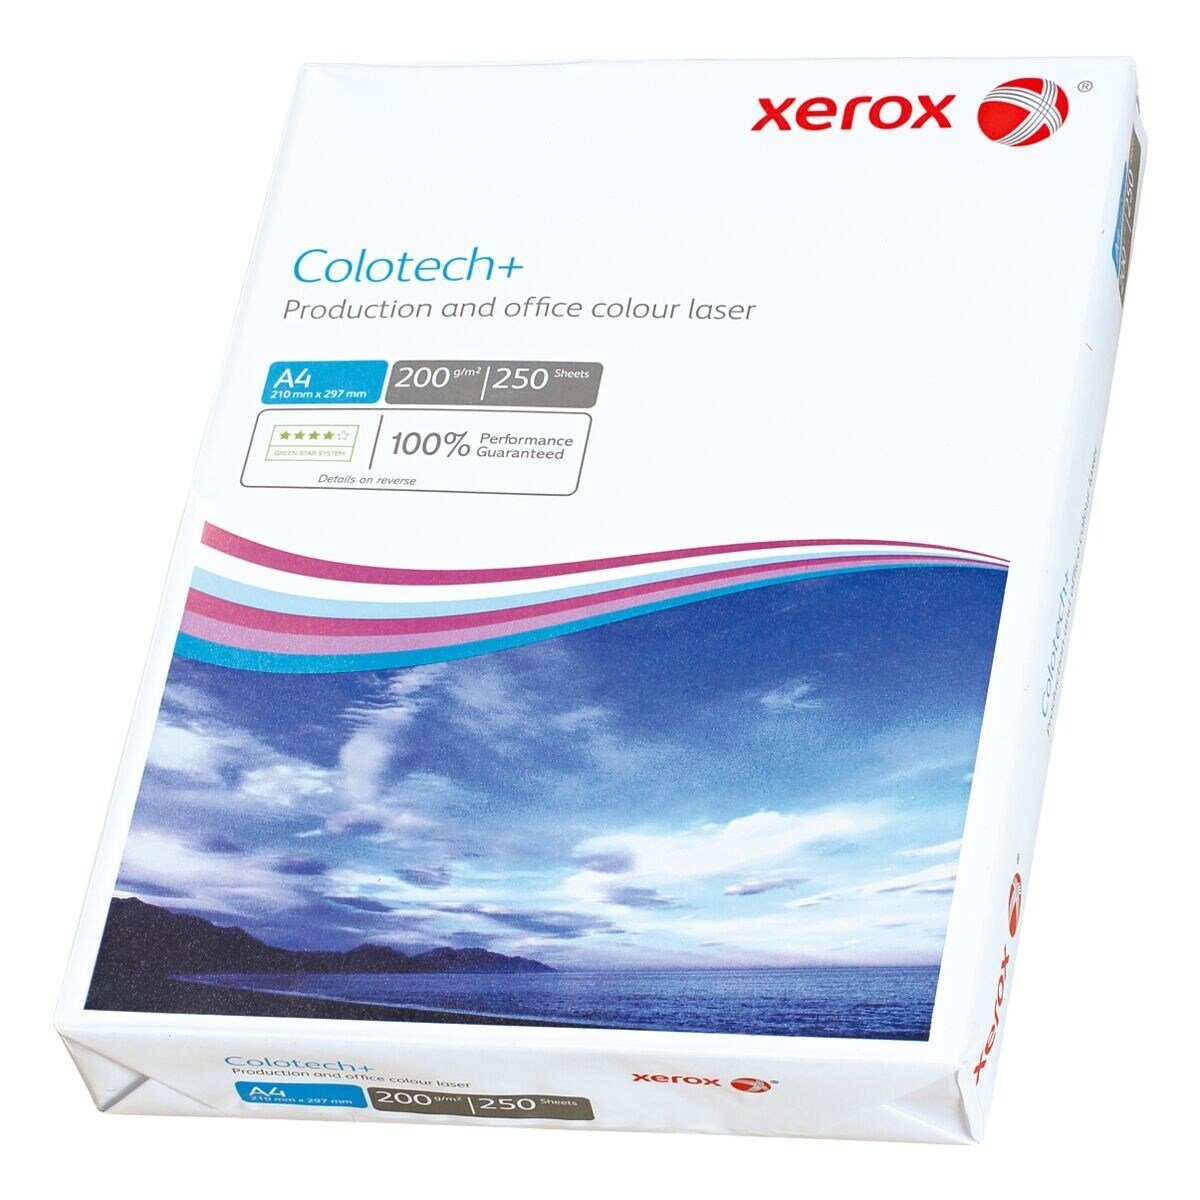 Xerox Farblaser-Druckerpapier Colotech+, Format DIN A4, 200 g/m², 250 Blatt